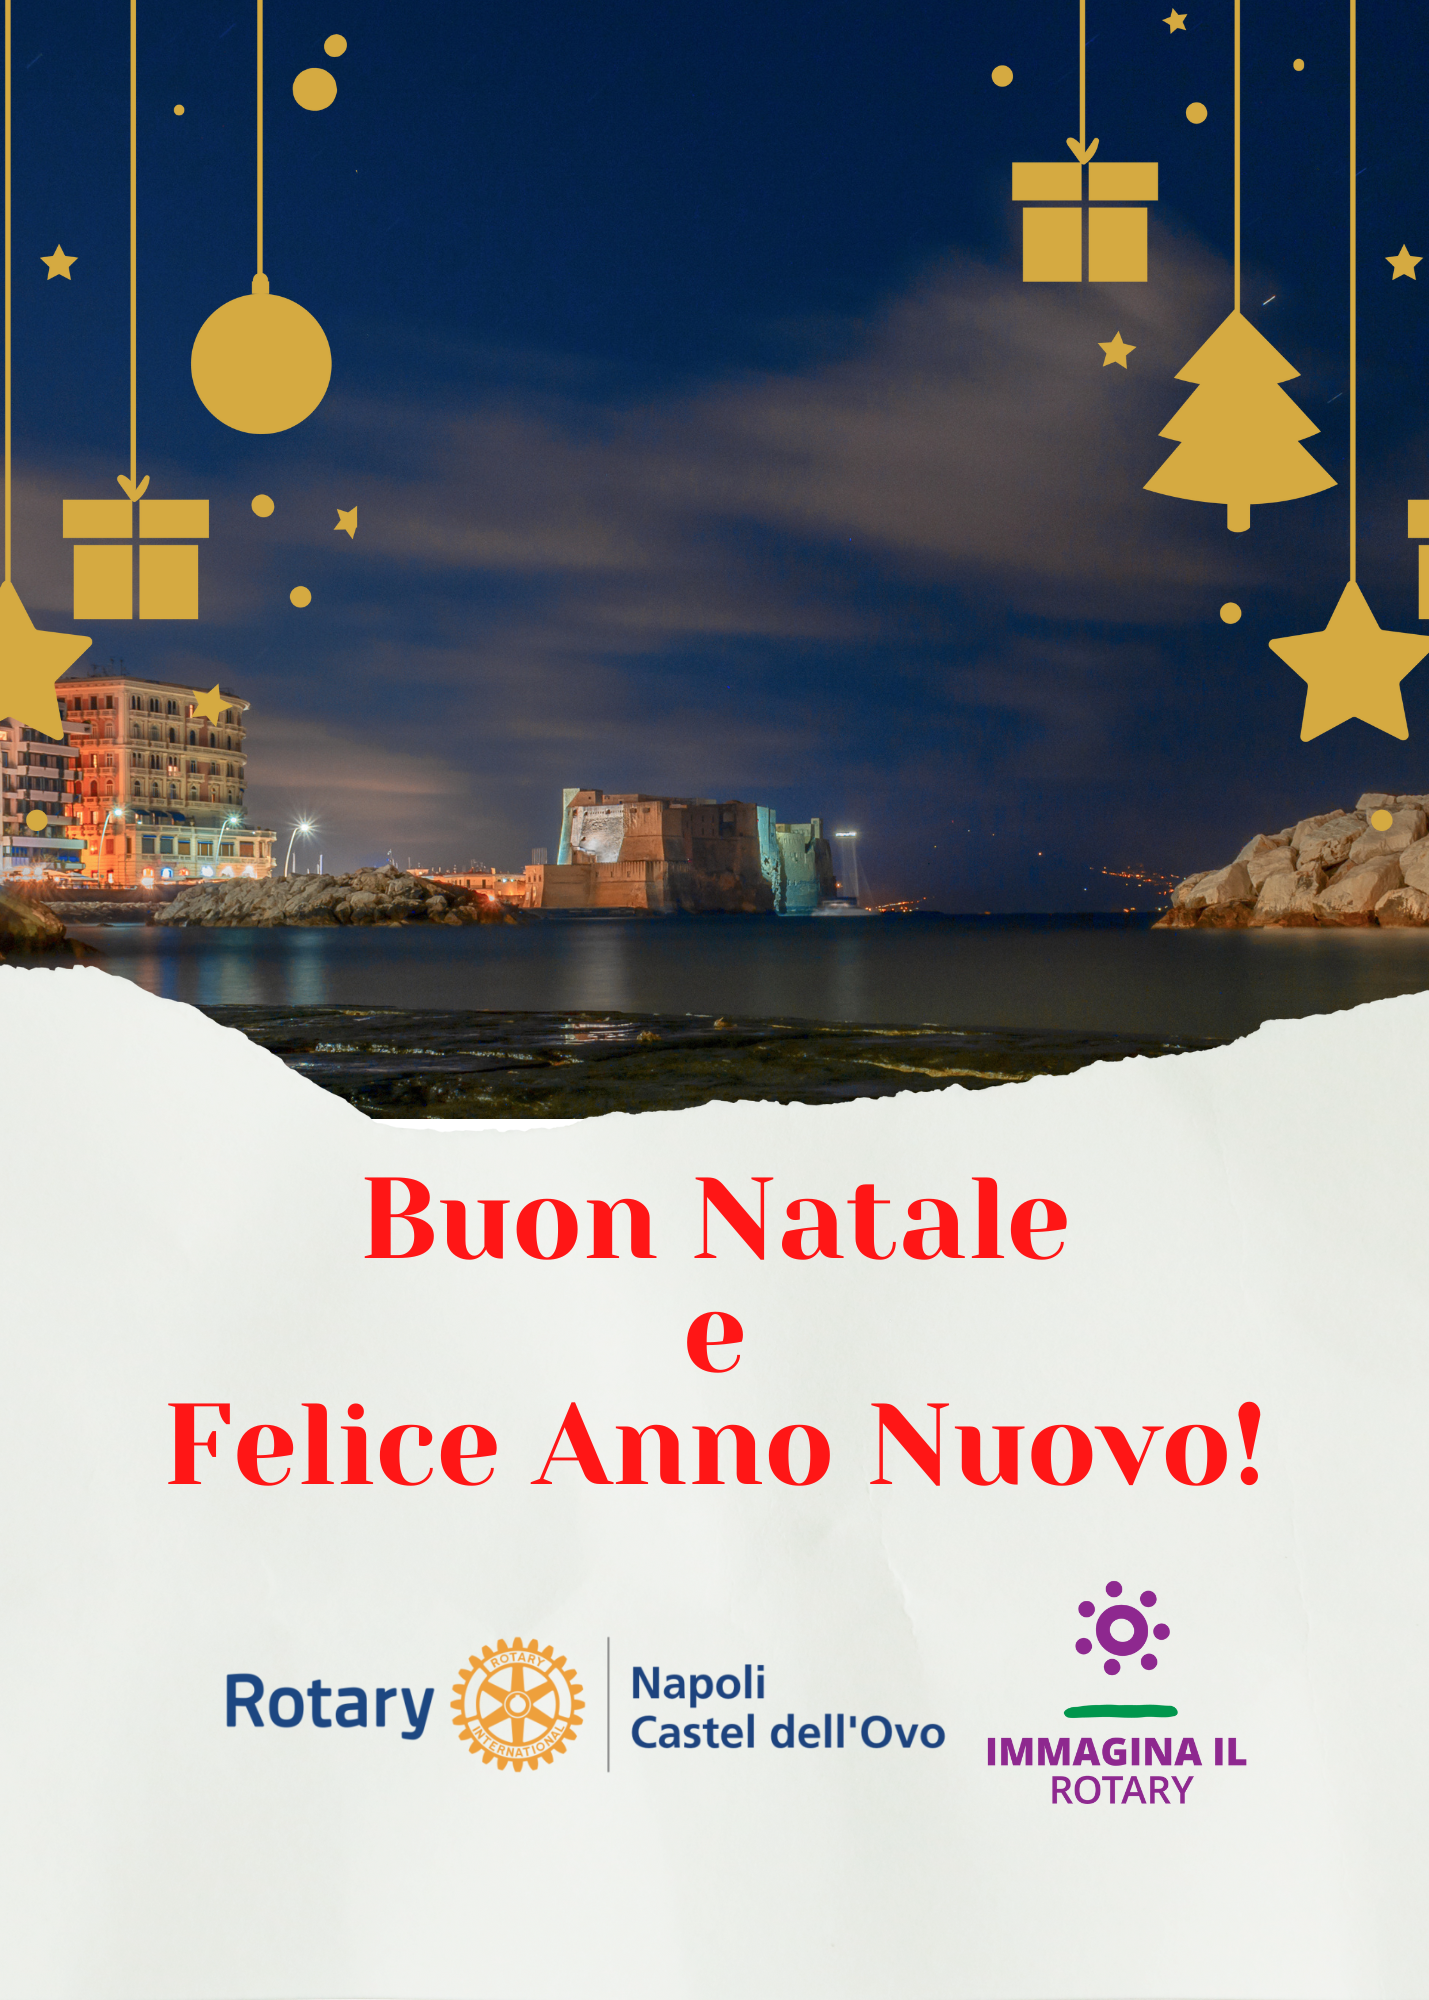 Auguri di Buon Natale e Felice Anno Nuovo dal Rotary Club Napoli Castel dell’Ovo